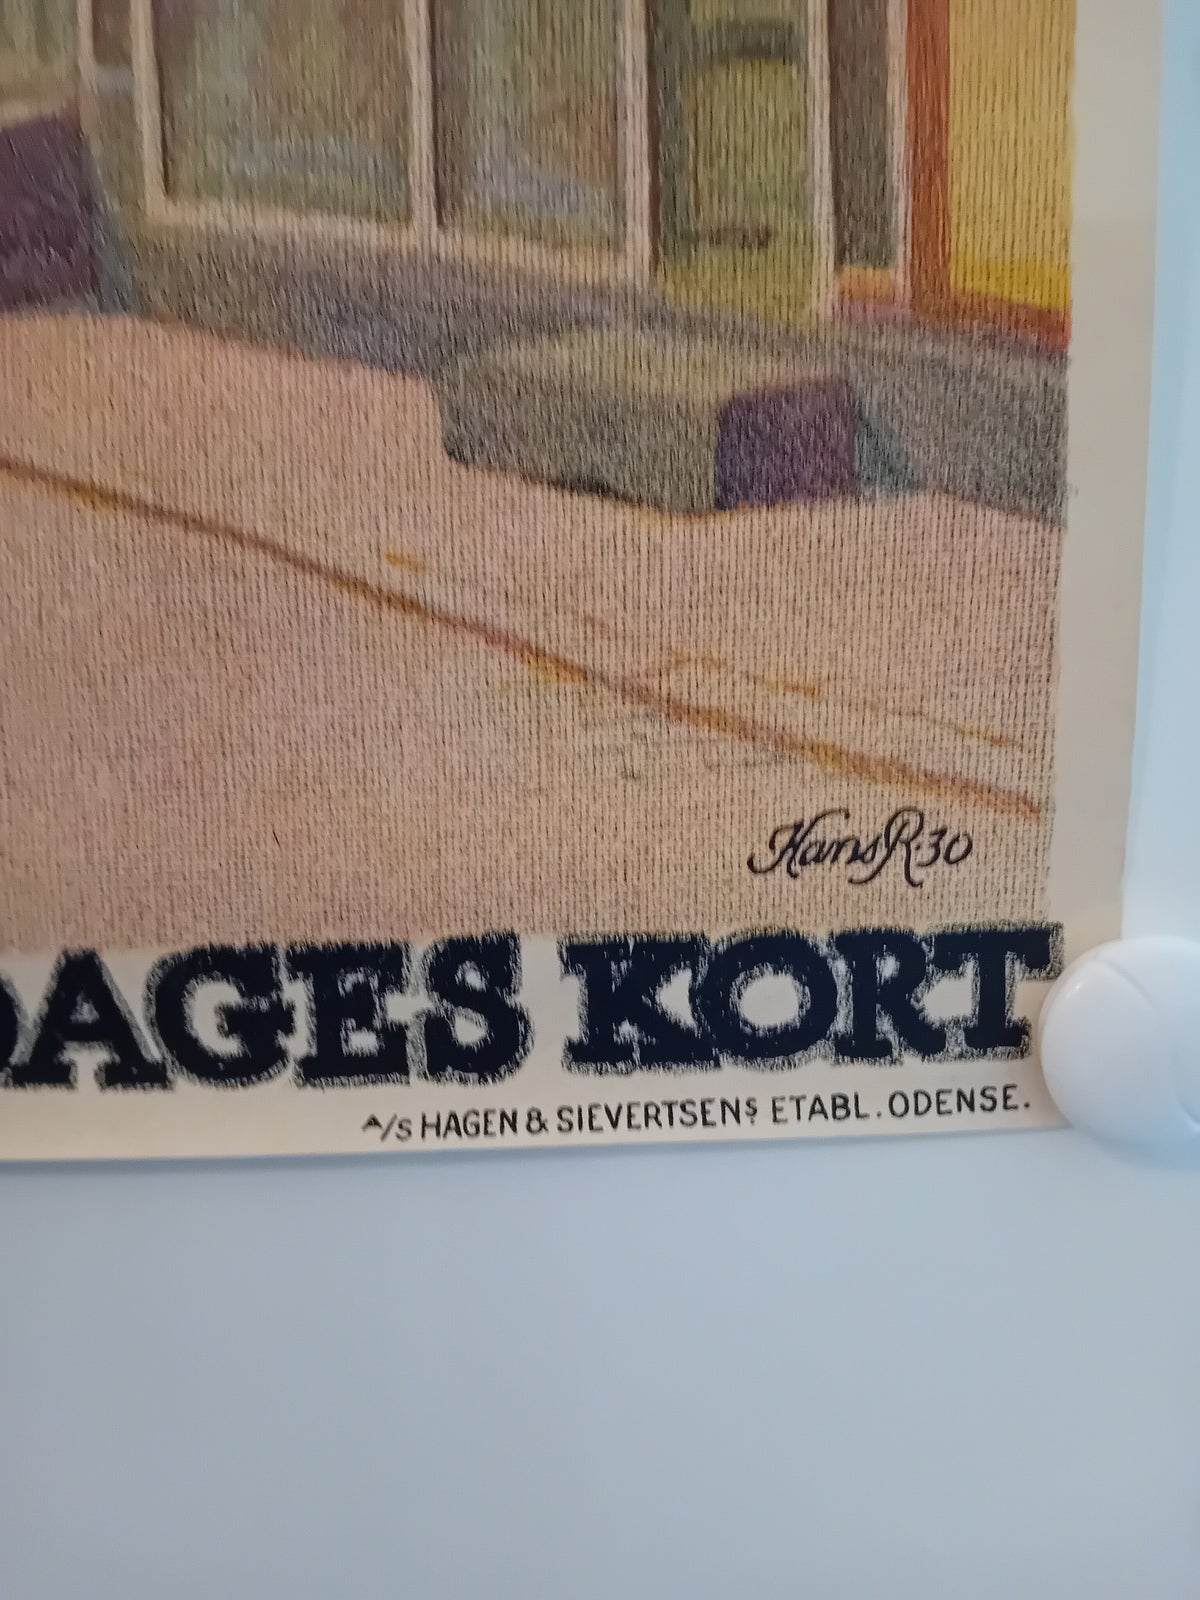 Plakat, Hans R, motiv: Nyborg